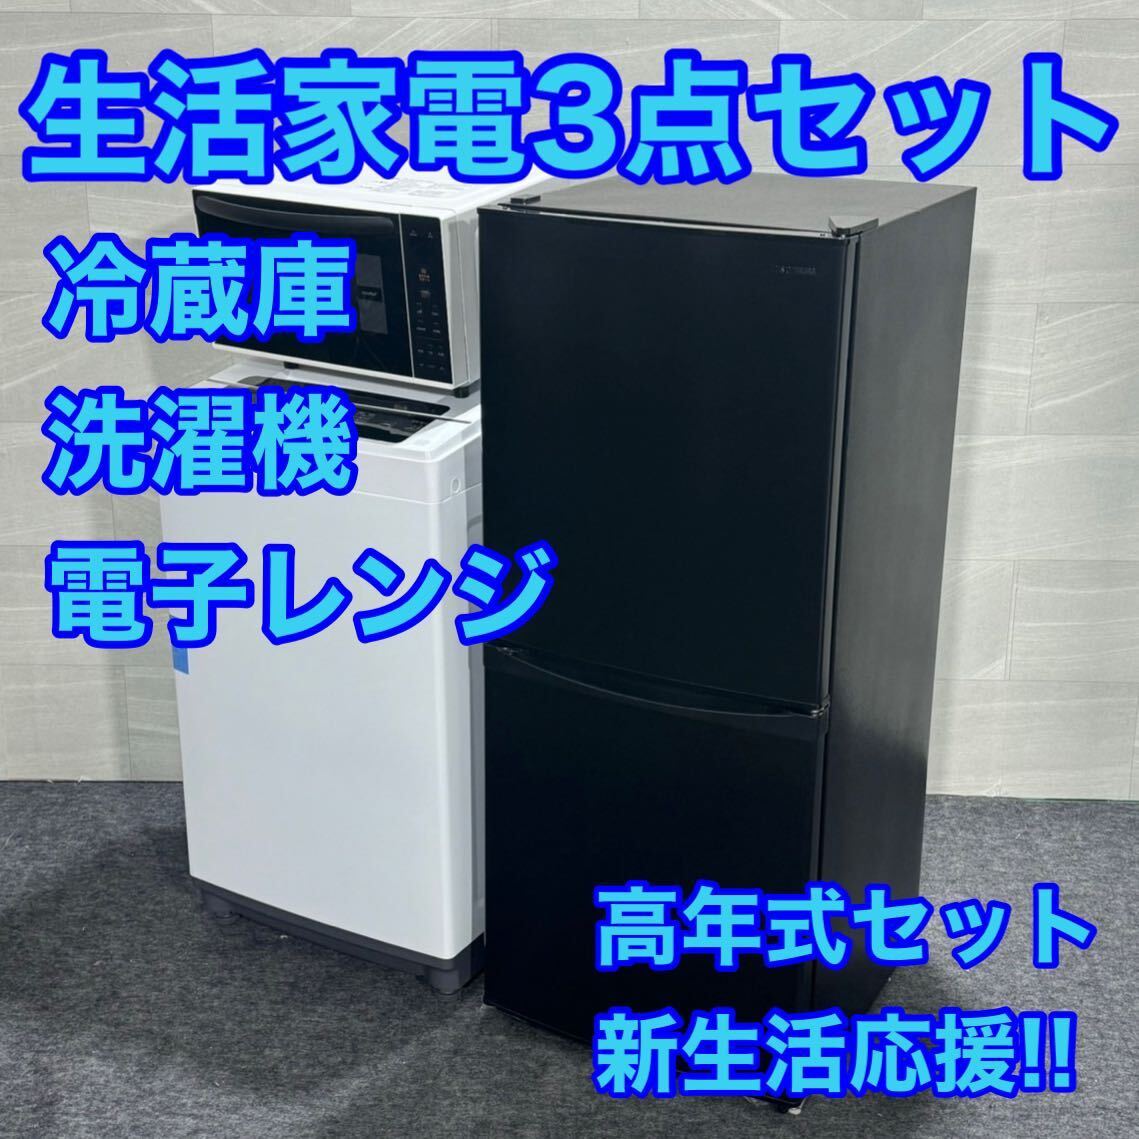 生活家電3点セット 冷蔵庫 洗濯機 電子レンジ 2022年 2021年 高年式 d1927 格安 お買い得 新生活応援